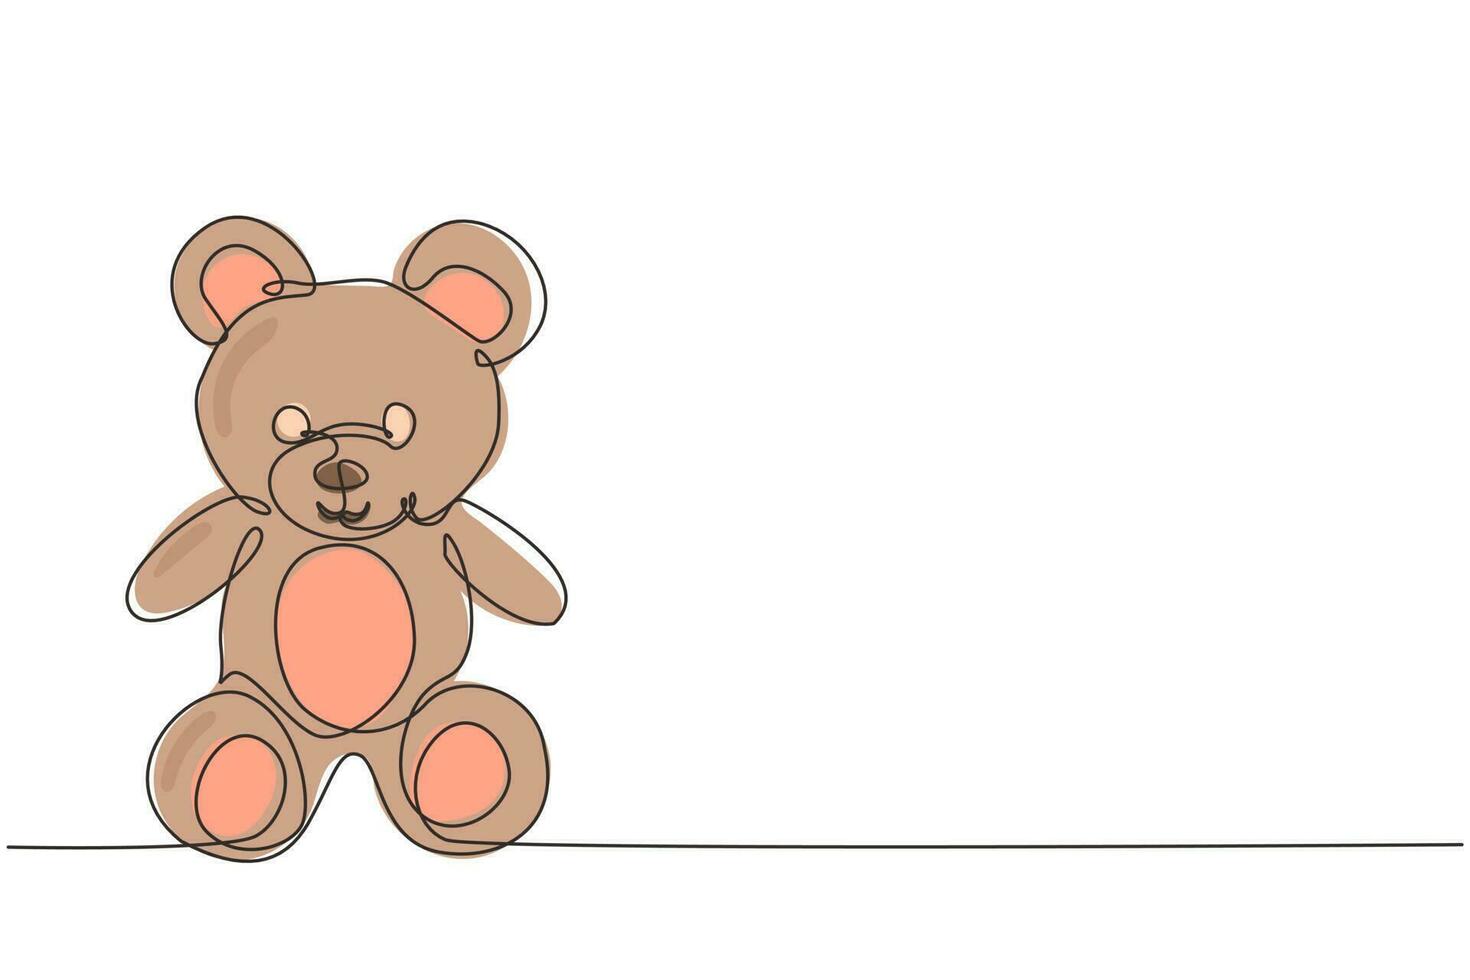 único desenho de linha contínua adorável brinquedo de ursinho de pelúcia. lindo e fofo ursinho de pelúcia. ursinho de pelúcia sentado no chão. personagem de ursinho de pelúcia. vetor de design gráfico de desenho dinâmico de uma linha